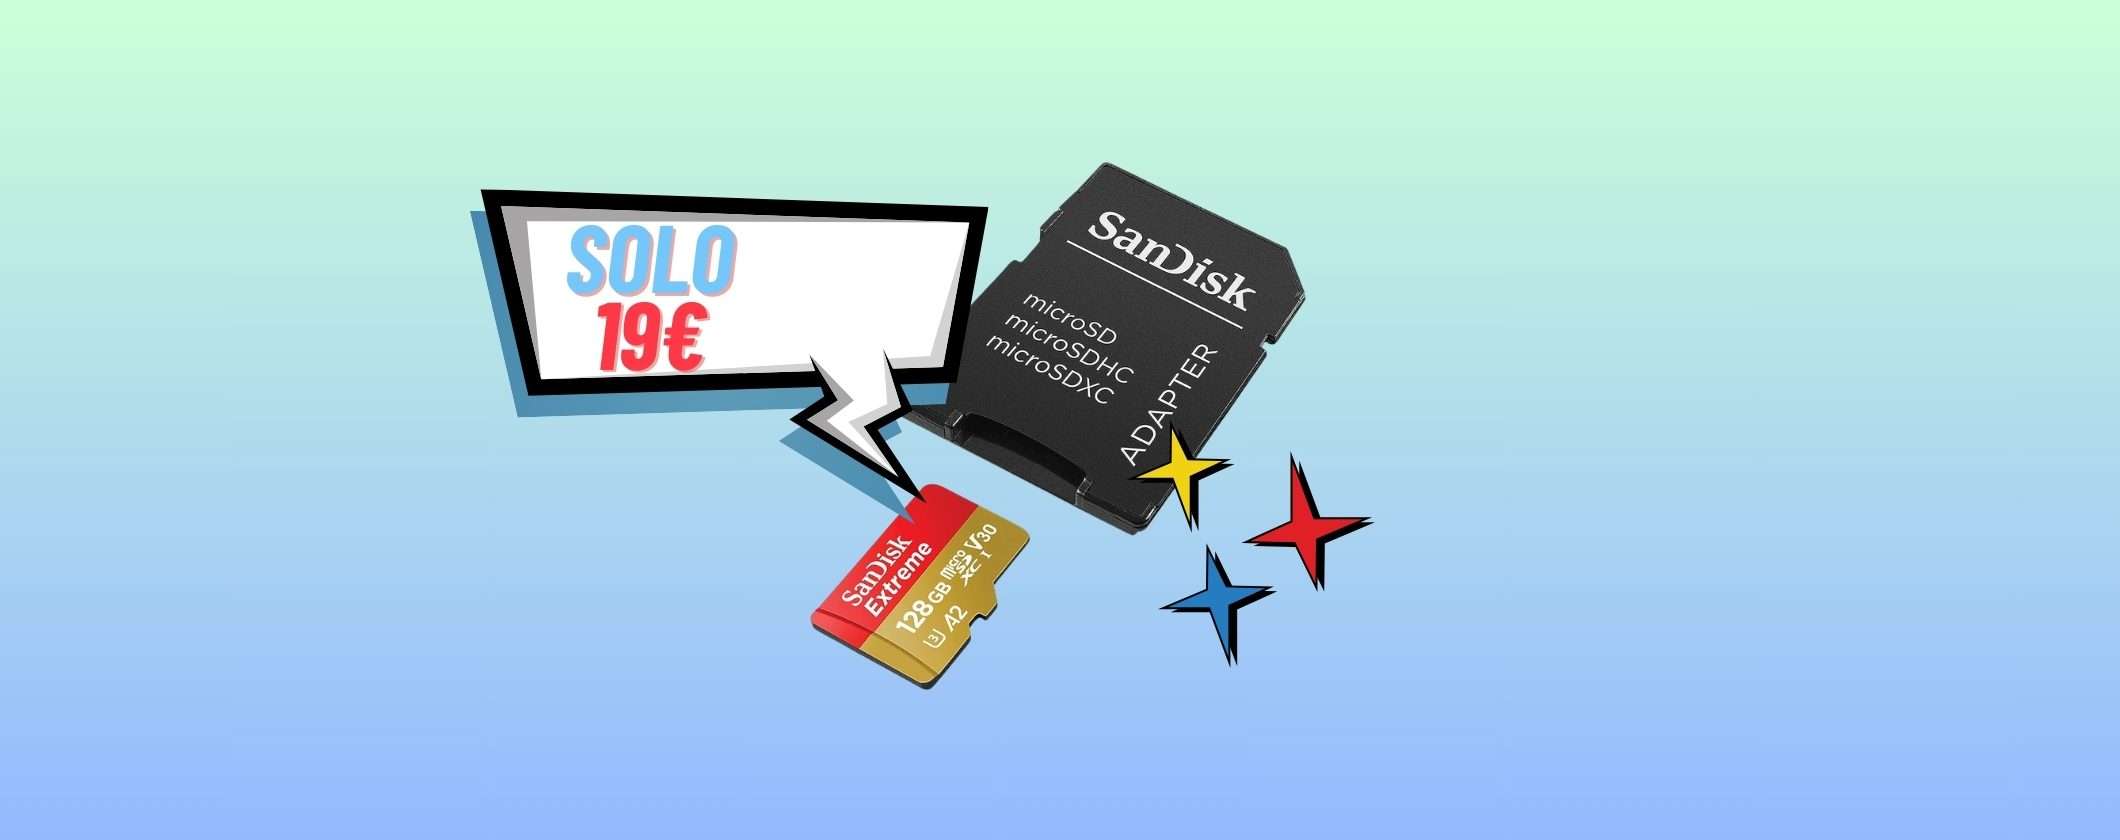 MicroSD SanDisk 128GB: solo 19€ alla Festa delle Offerte Primavera Amazon